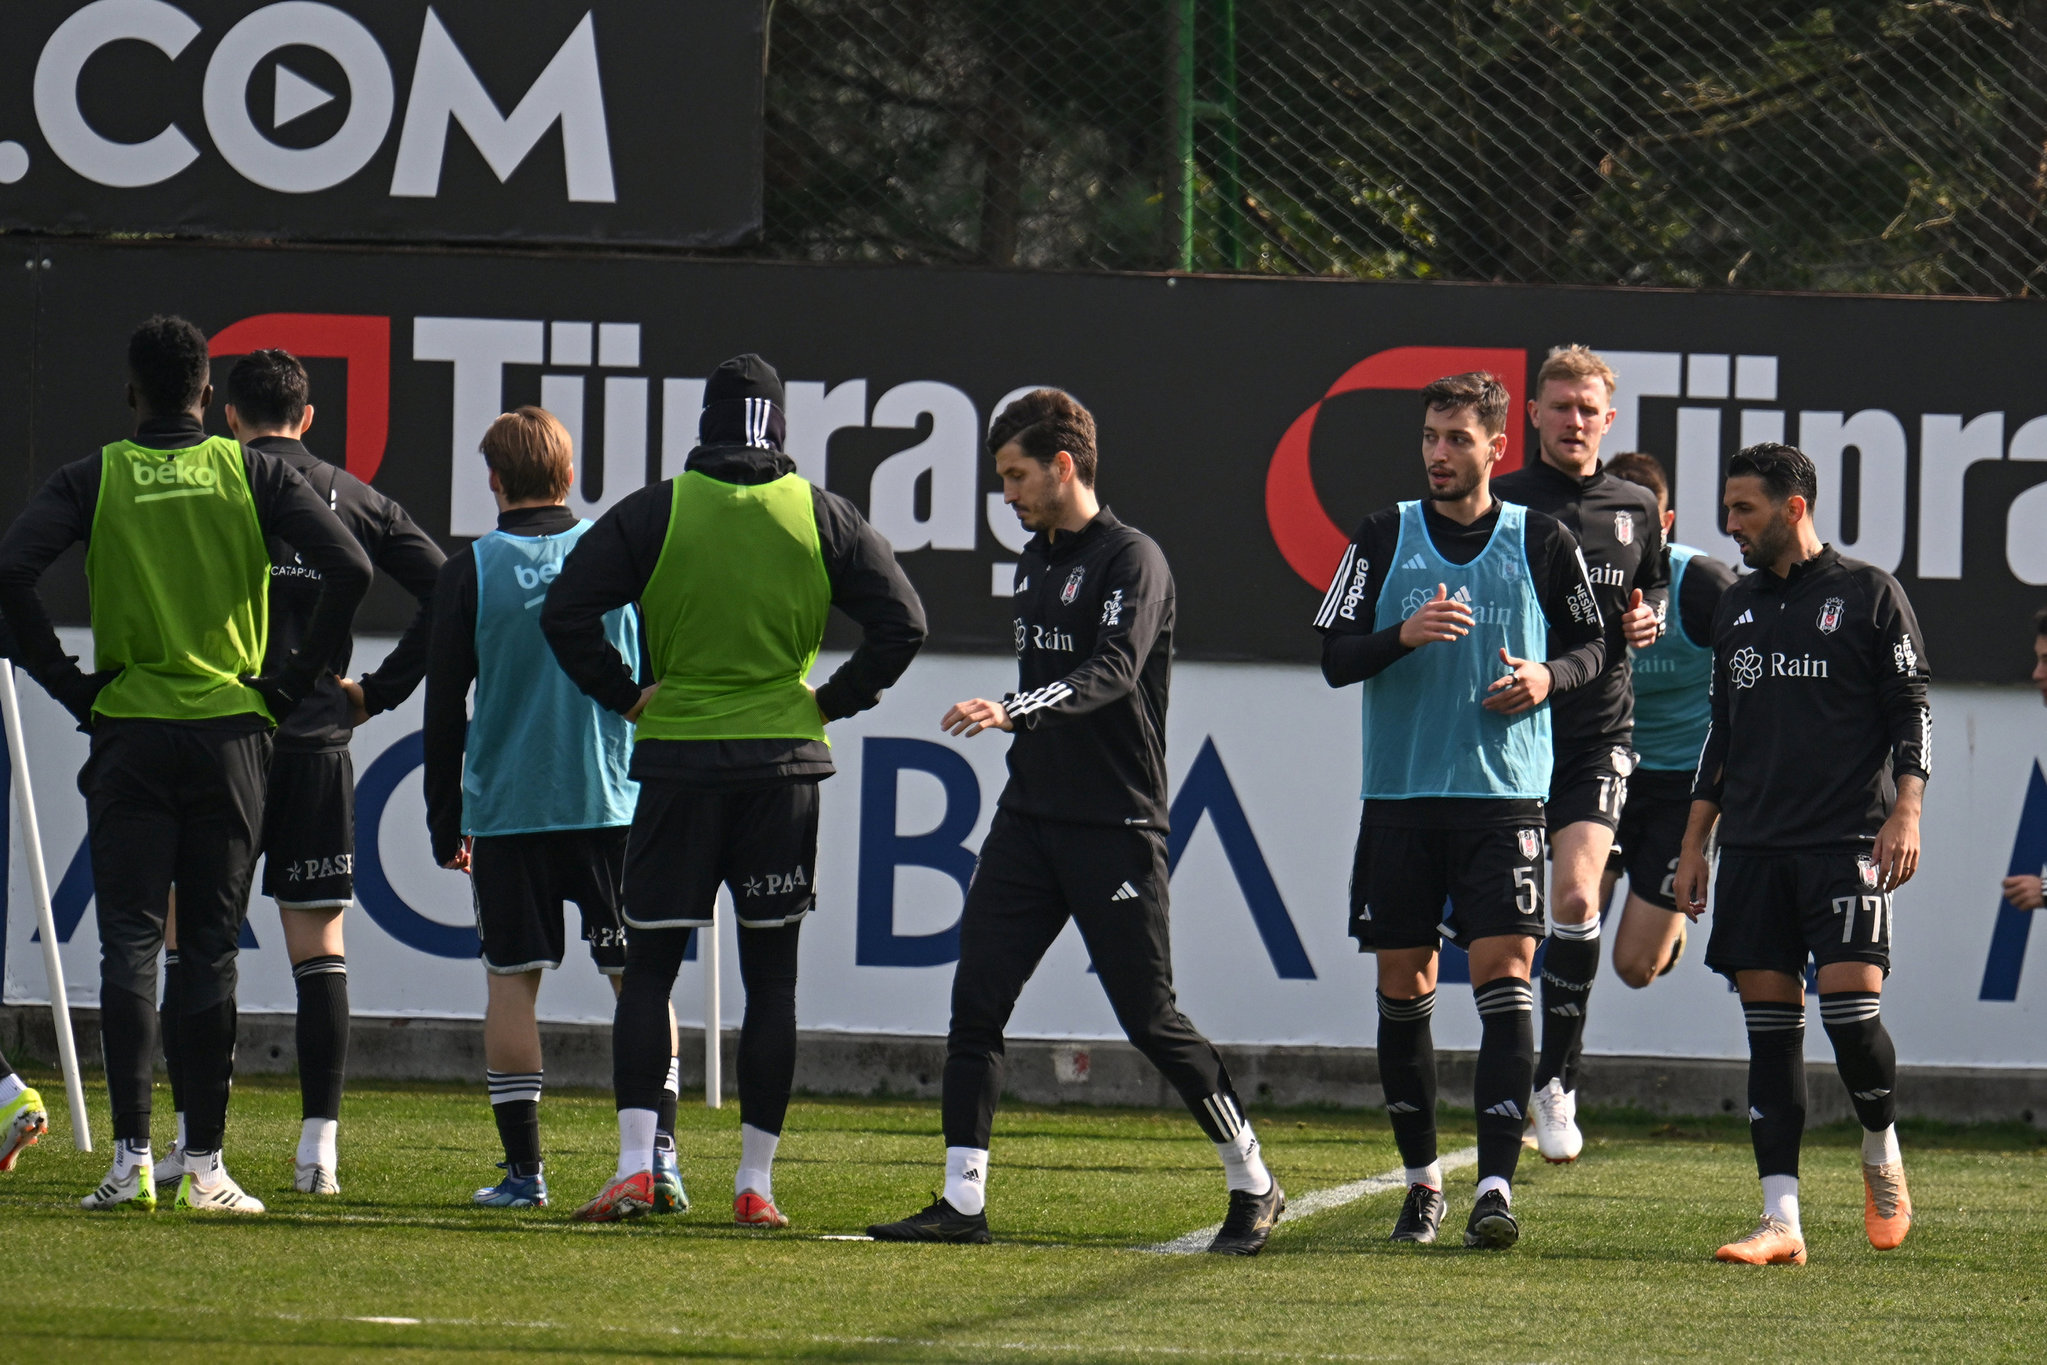 Beşiktaş - Galatasaray derbisi öncesi büyük tehlike! İşte kart sınırındaki futbolcular